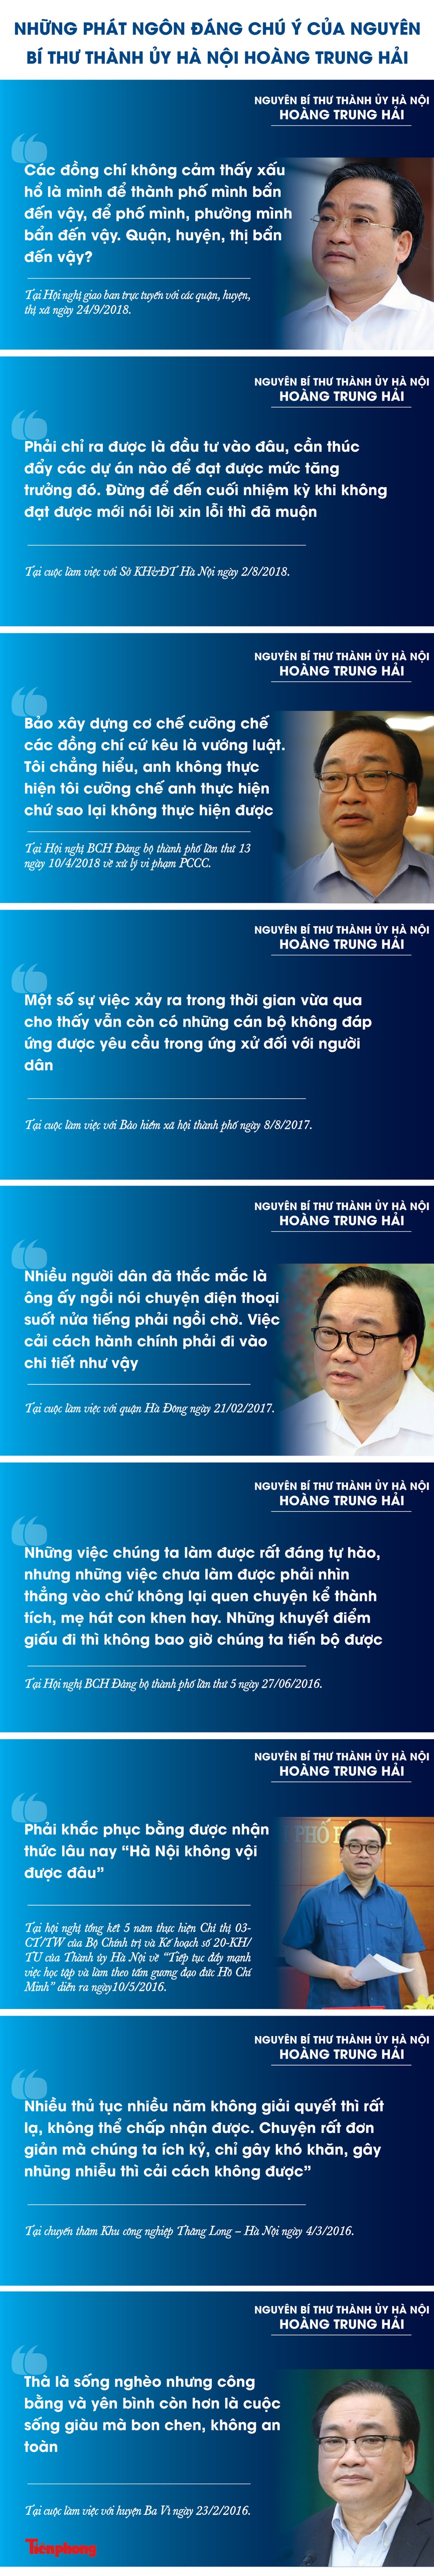 Những phát ngôn đáng chú ý của nguyên Bí thư Thành ủy Hà Nội Hoàng Trung Hải - 1